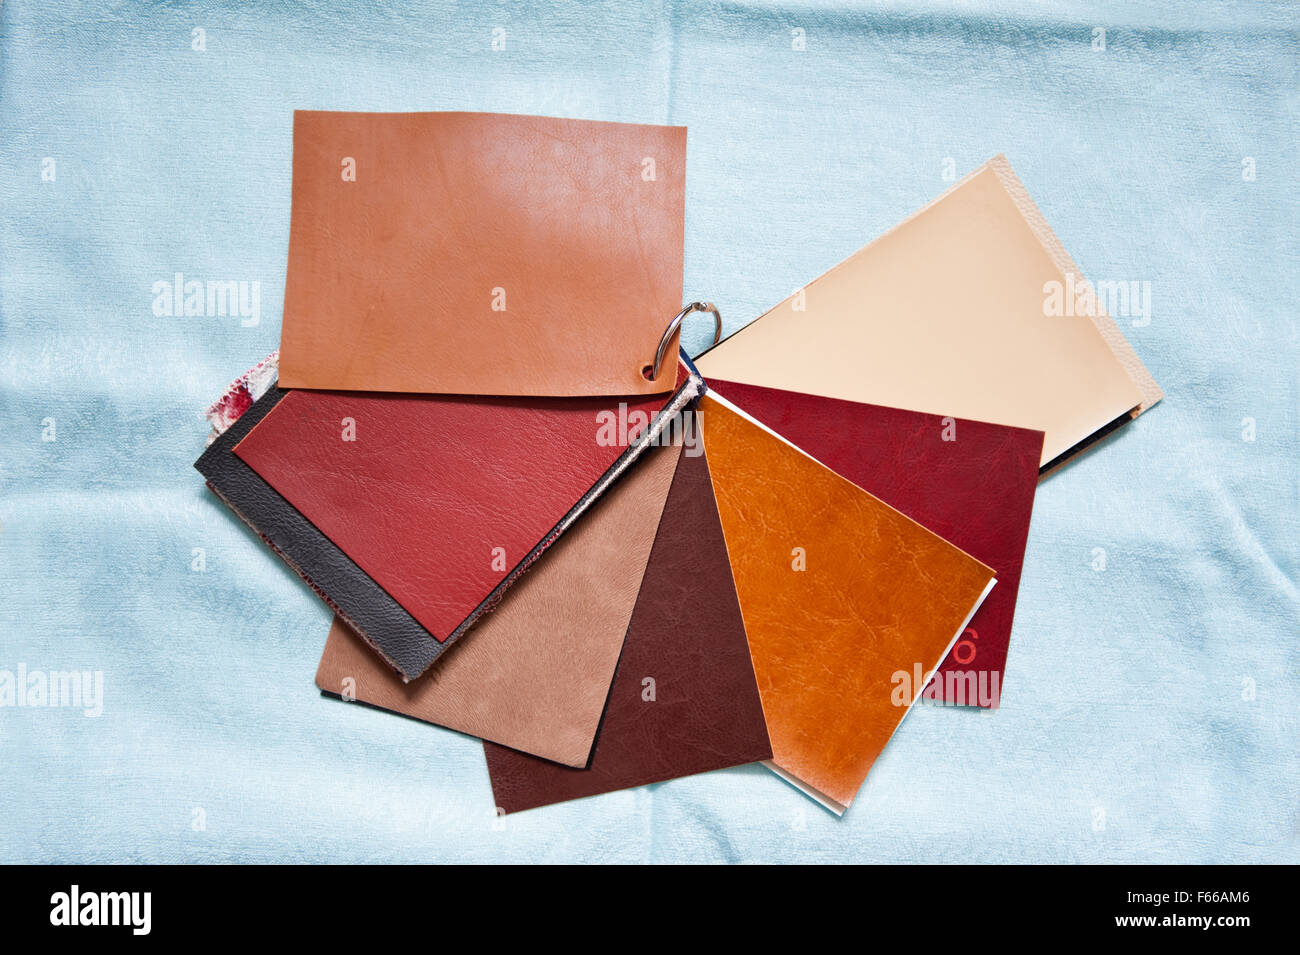 Leder Materialmusters Blätter Musterbuch mit verschiedenen Farben wie braun, rot, Beige, Stoff Probe Stücke gebunden zusammen Stockfoto